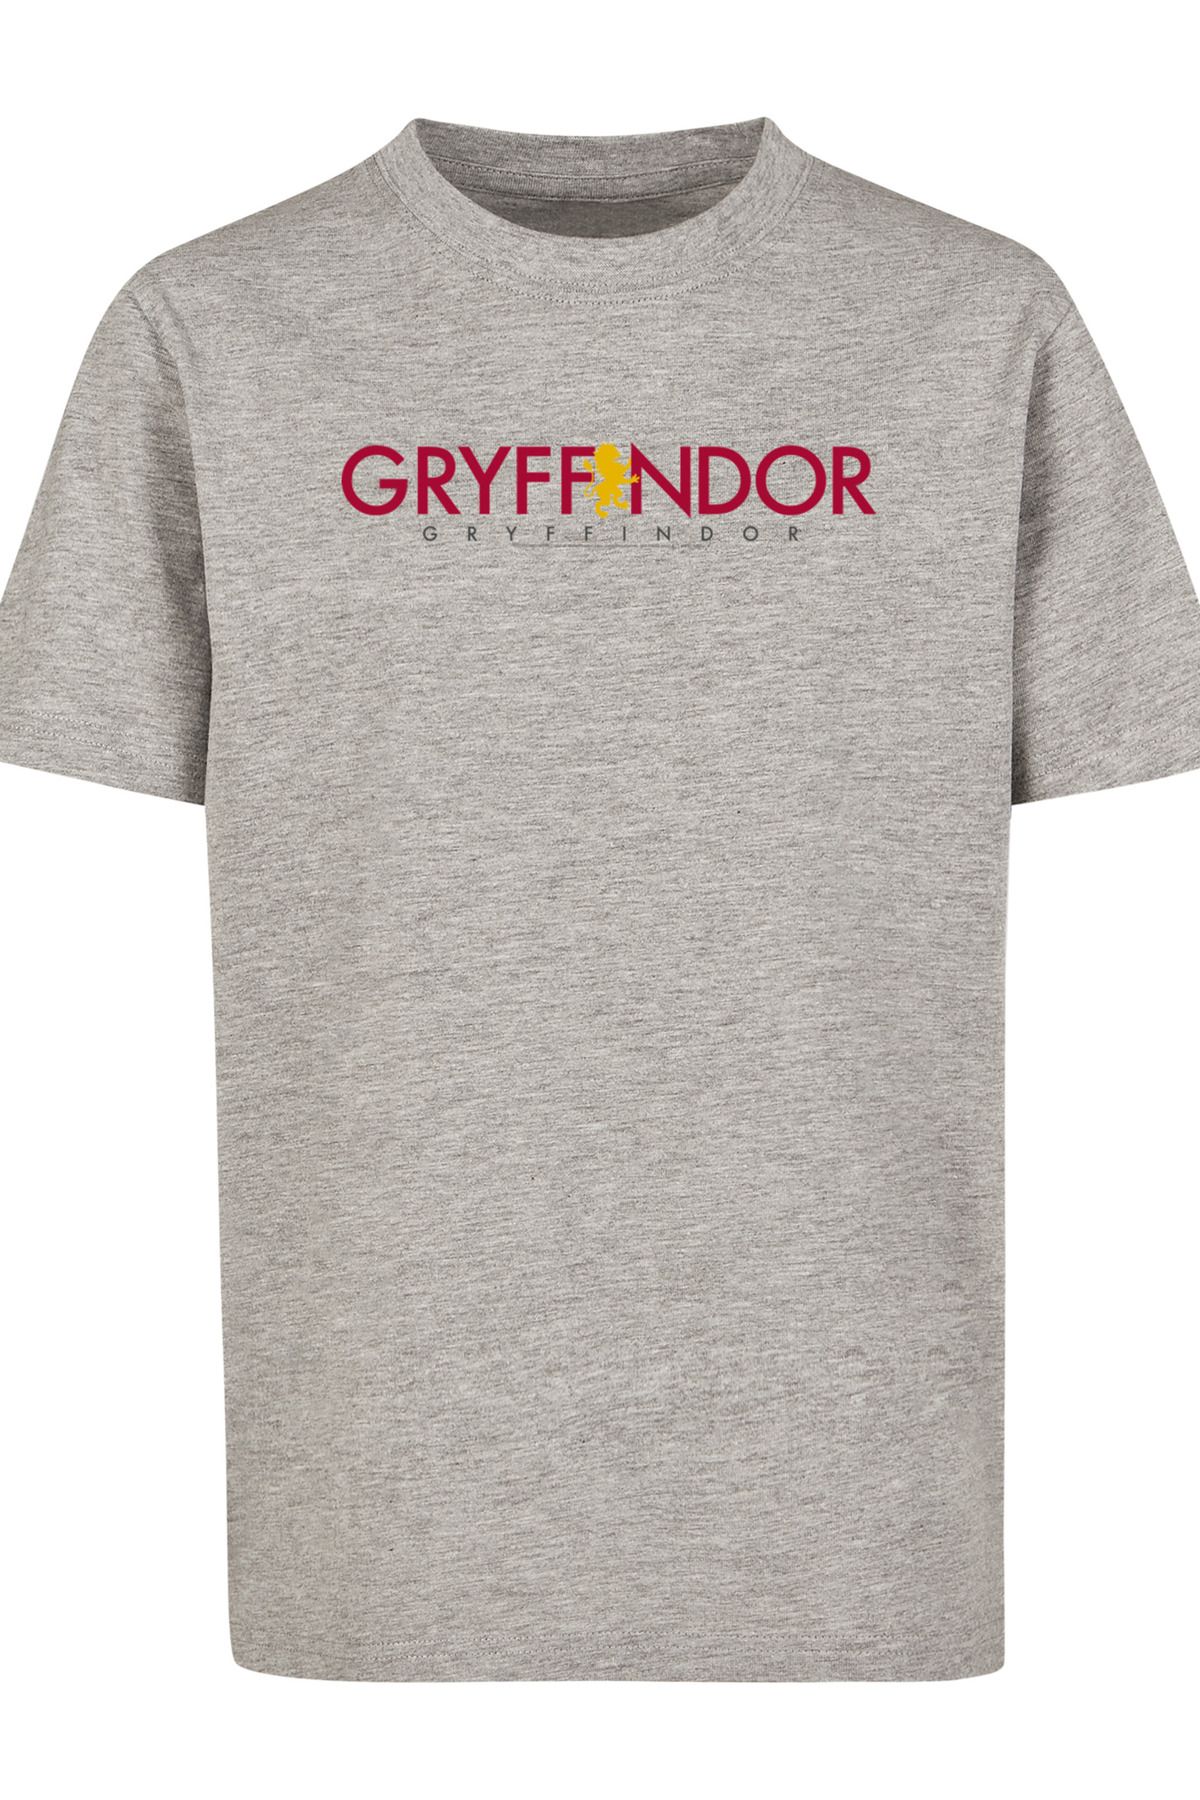 Trendyol - Kinder-Basic-T-Shirt F4NT4STIC mit Kinder-Harry-Potter-Gryffindor-Text